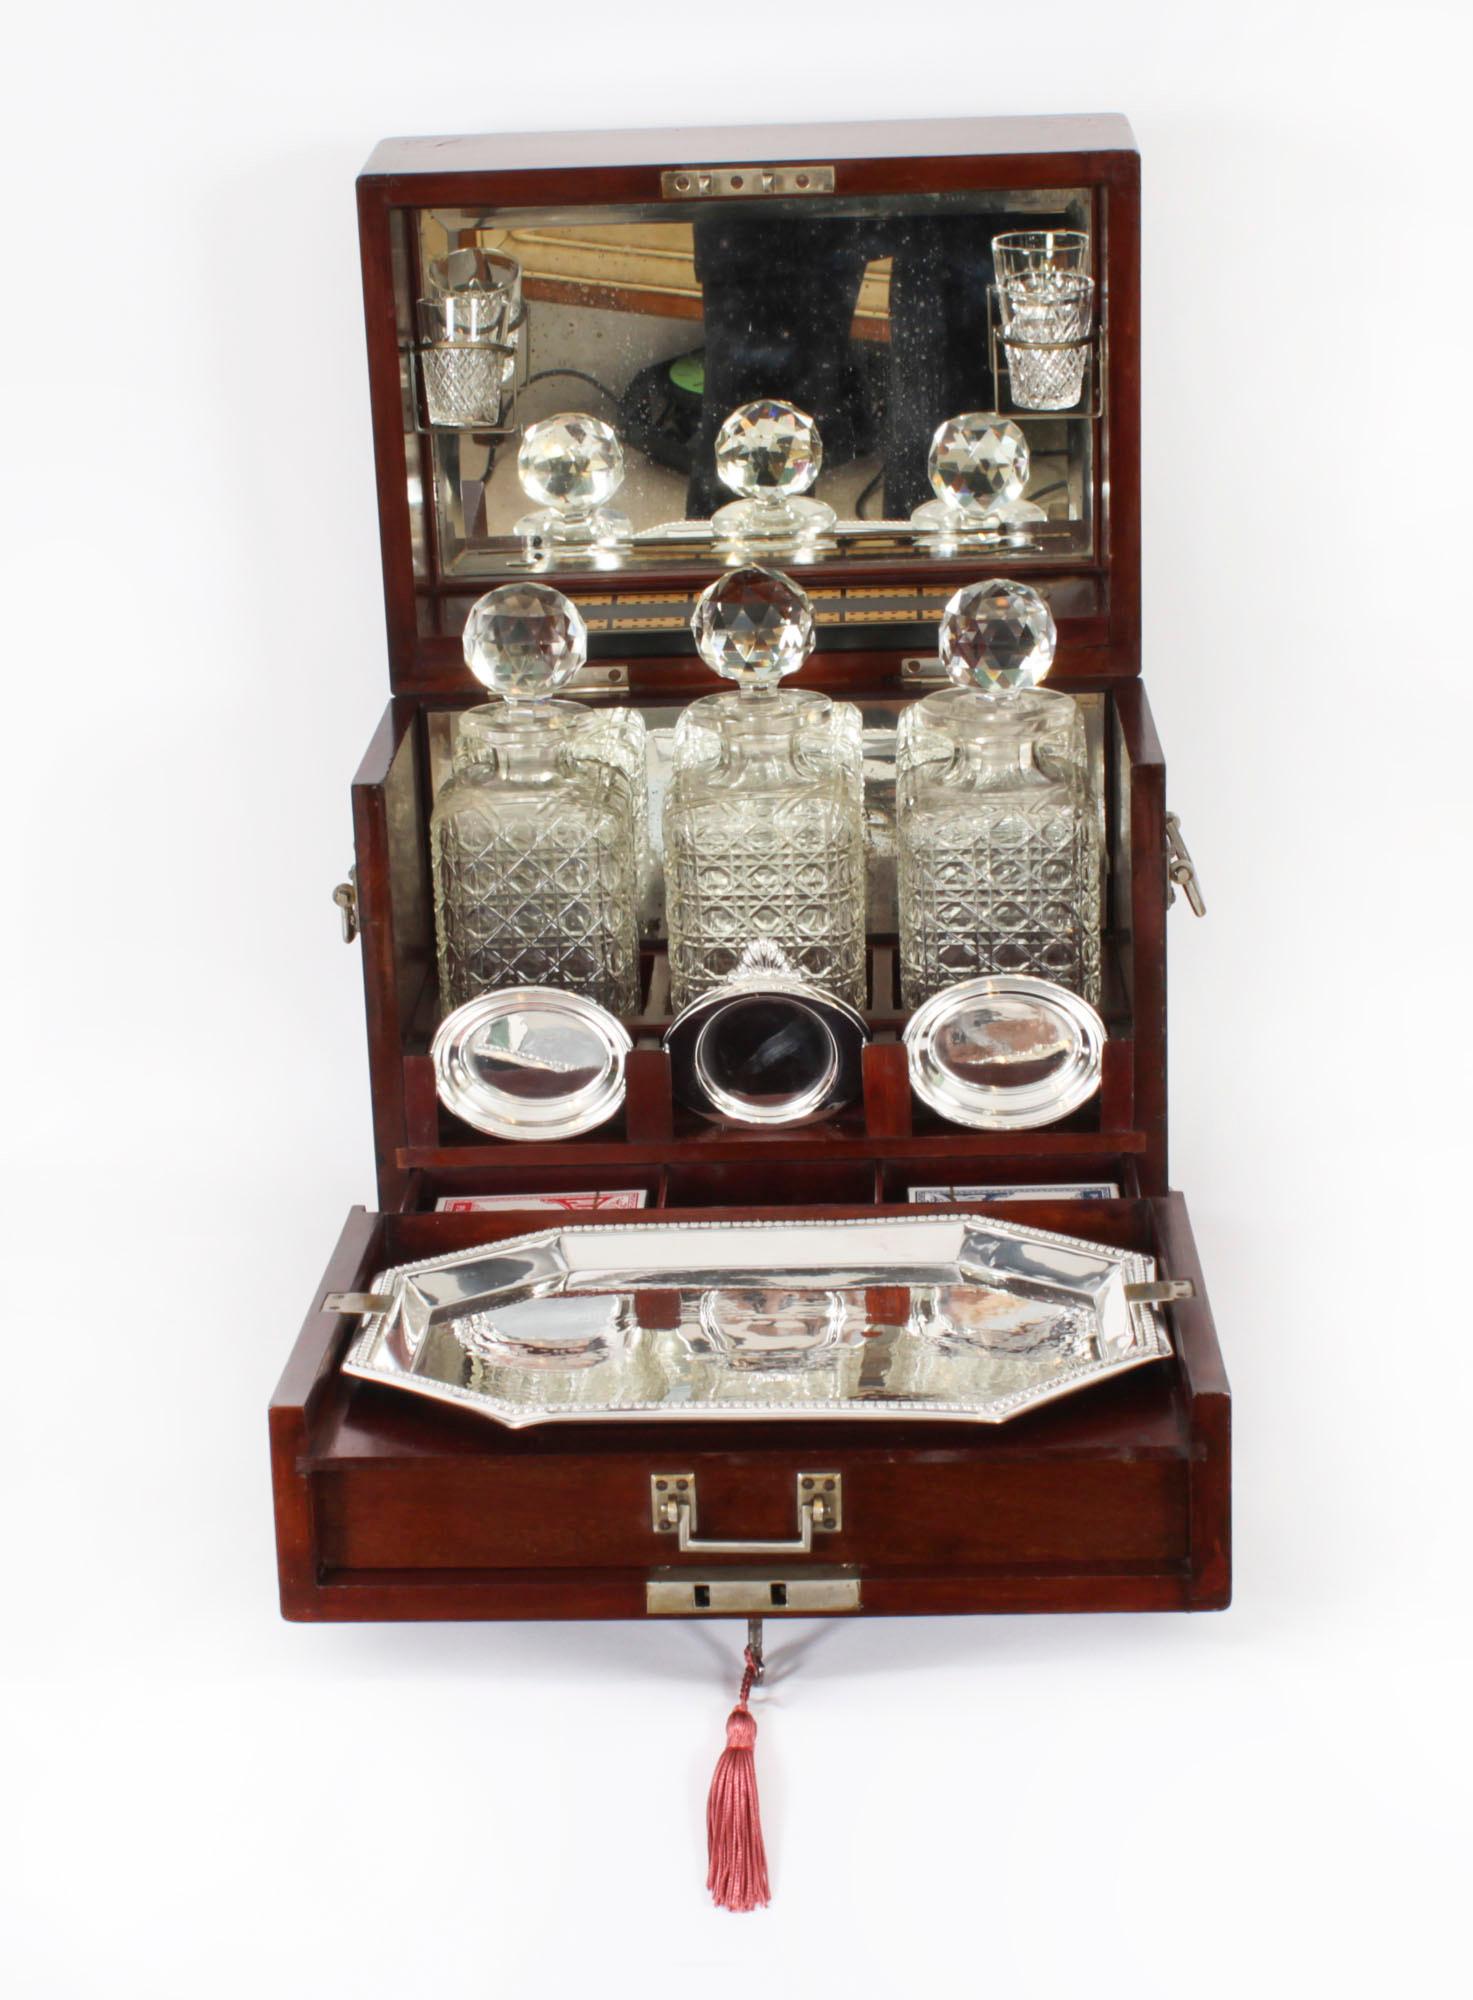 Dies ist ein fabelhaftes antikes viktorianisches Spielekompendium und  tantalus, datiert um 1880.

Es besteht aus drei geschliffenen Kristallflaschen mit Stöpseln, einem Paar gravierter Schnapsgläser, einem versilberten Tablett und einem eingebauten